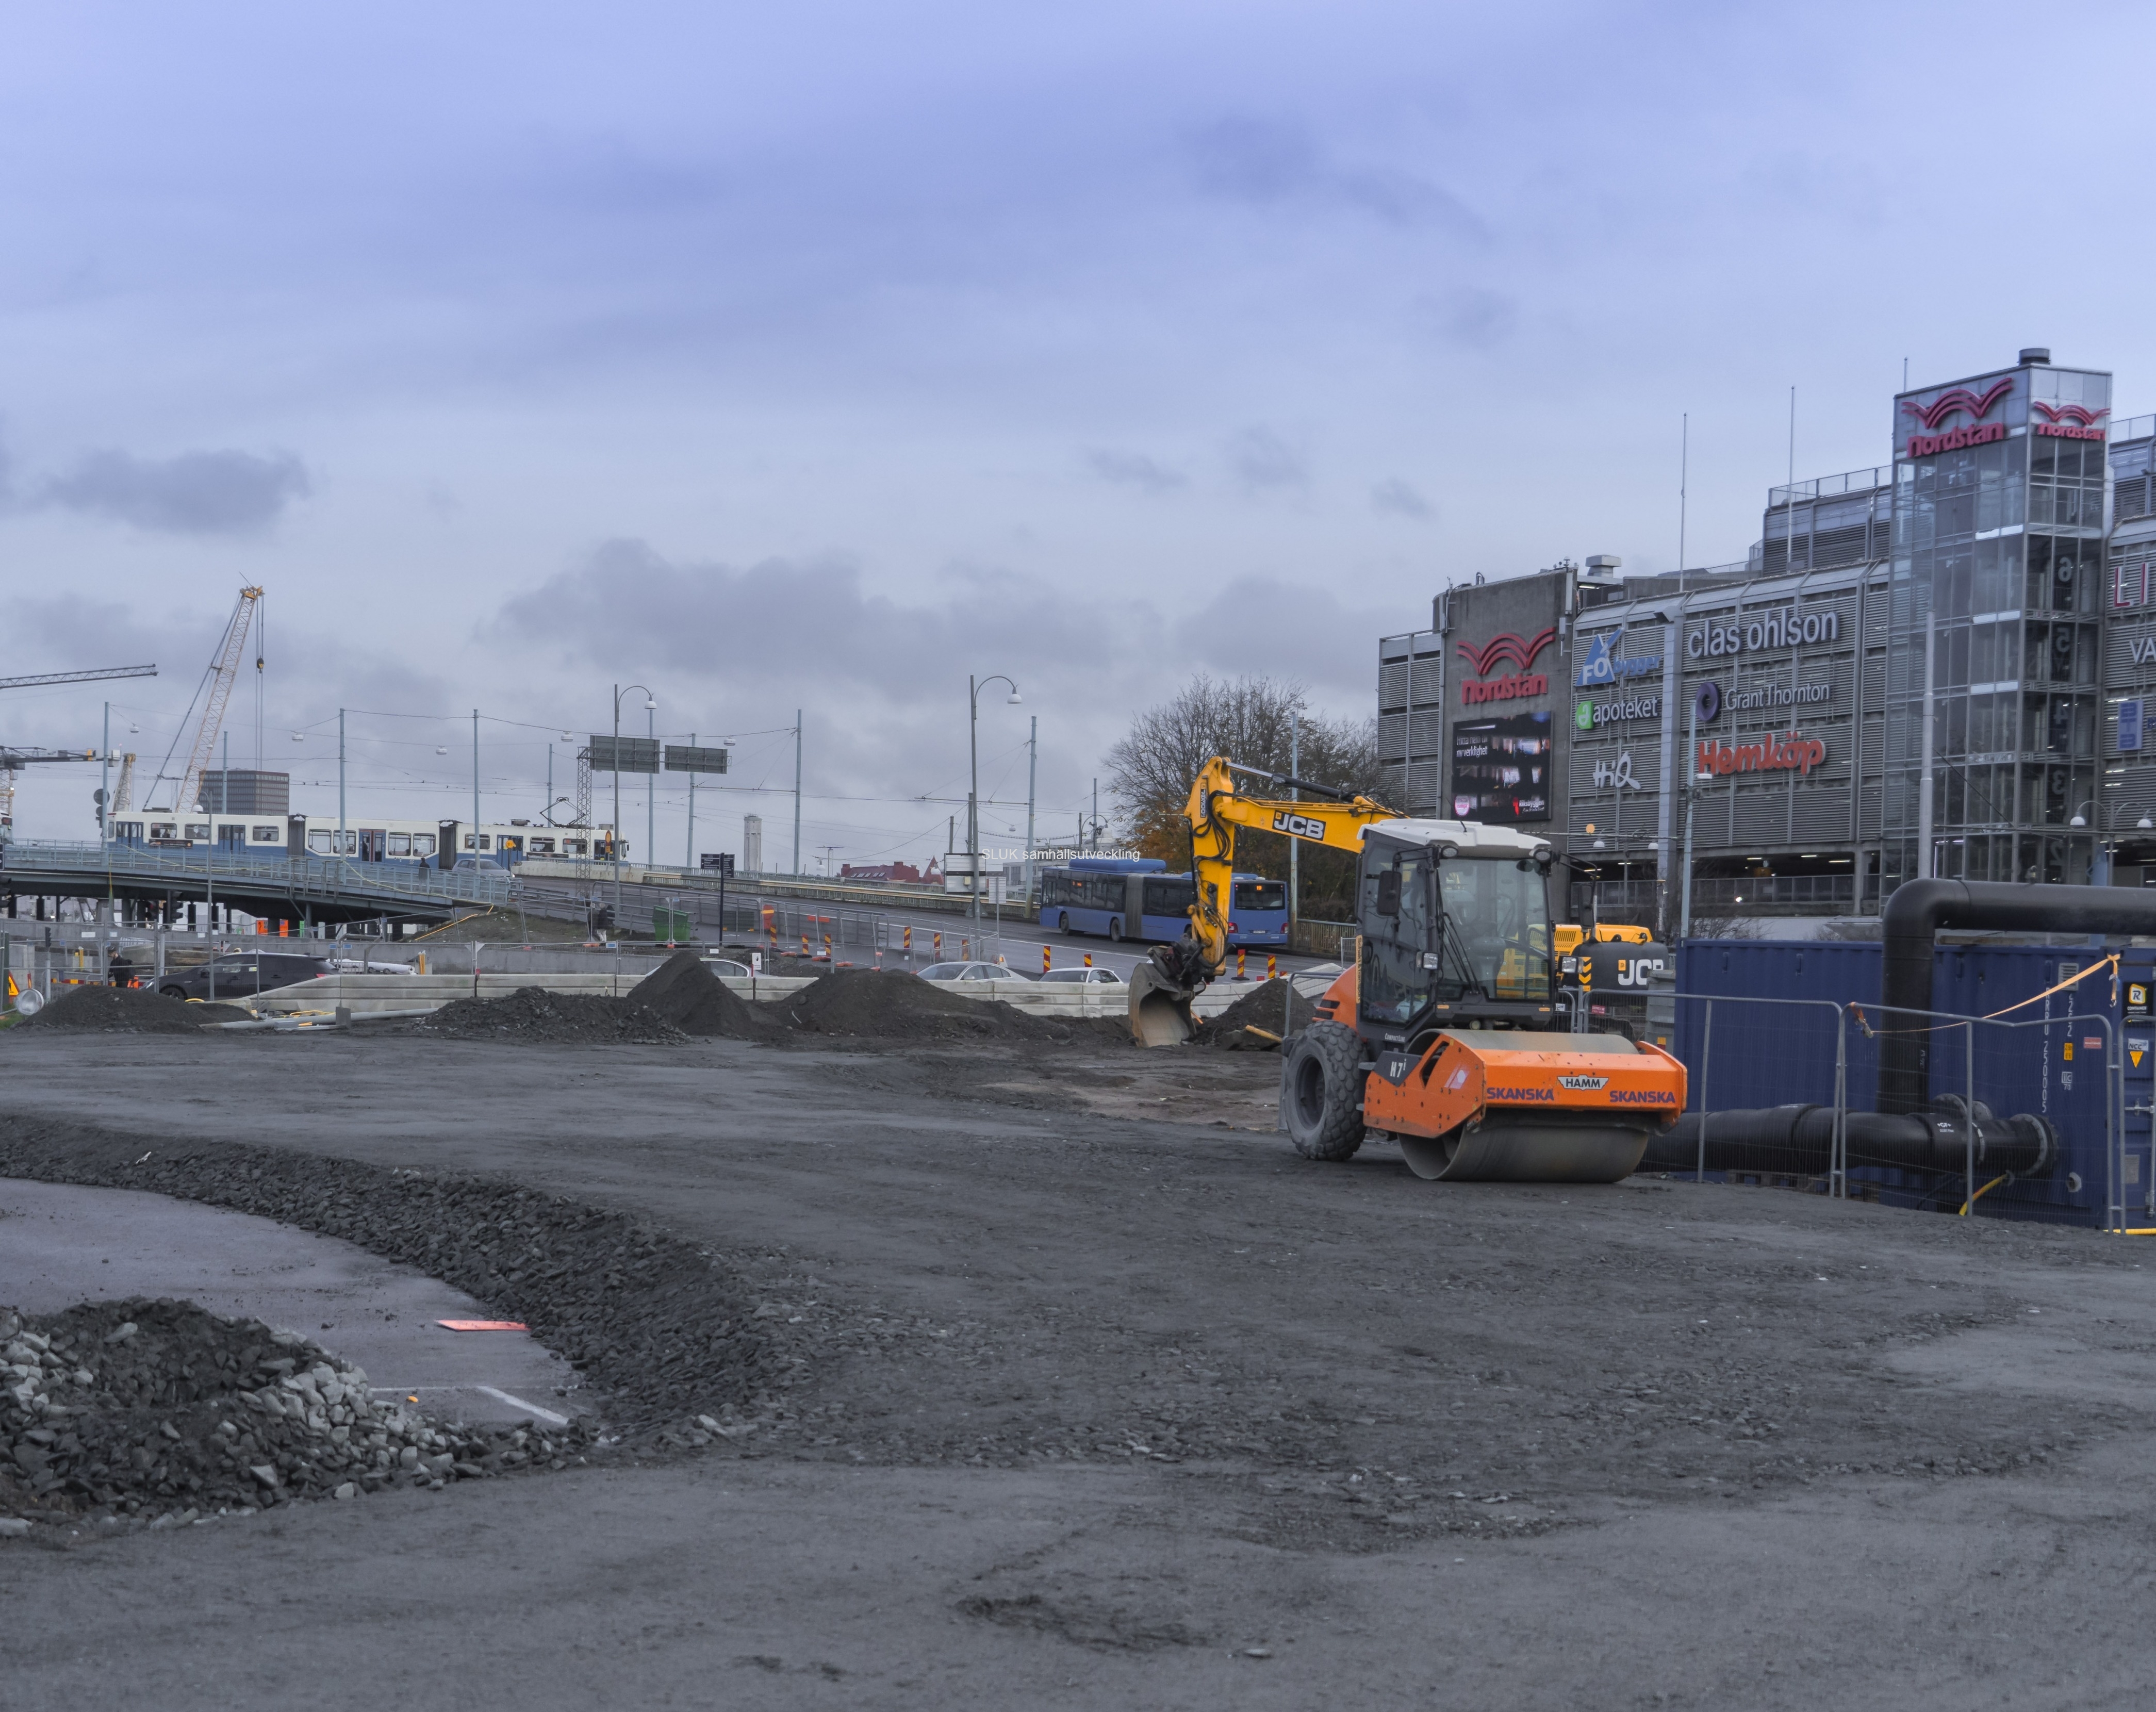 Vid Nordstan har man påbörjat arbetena med att förbereda vägen för att anlägga spårvagnsräls från Hisingsbron.